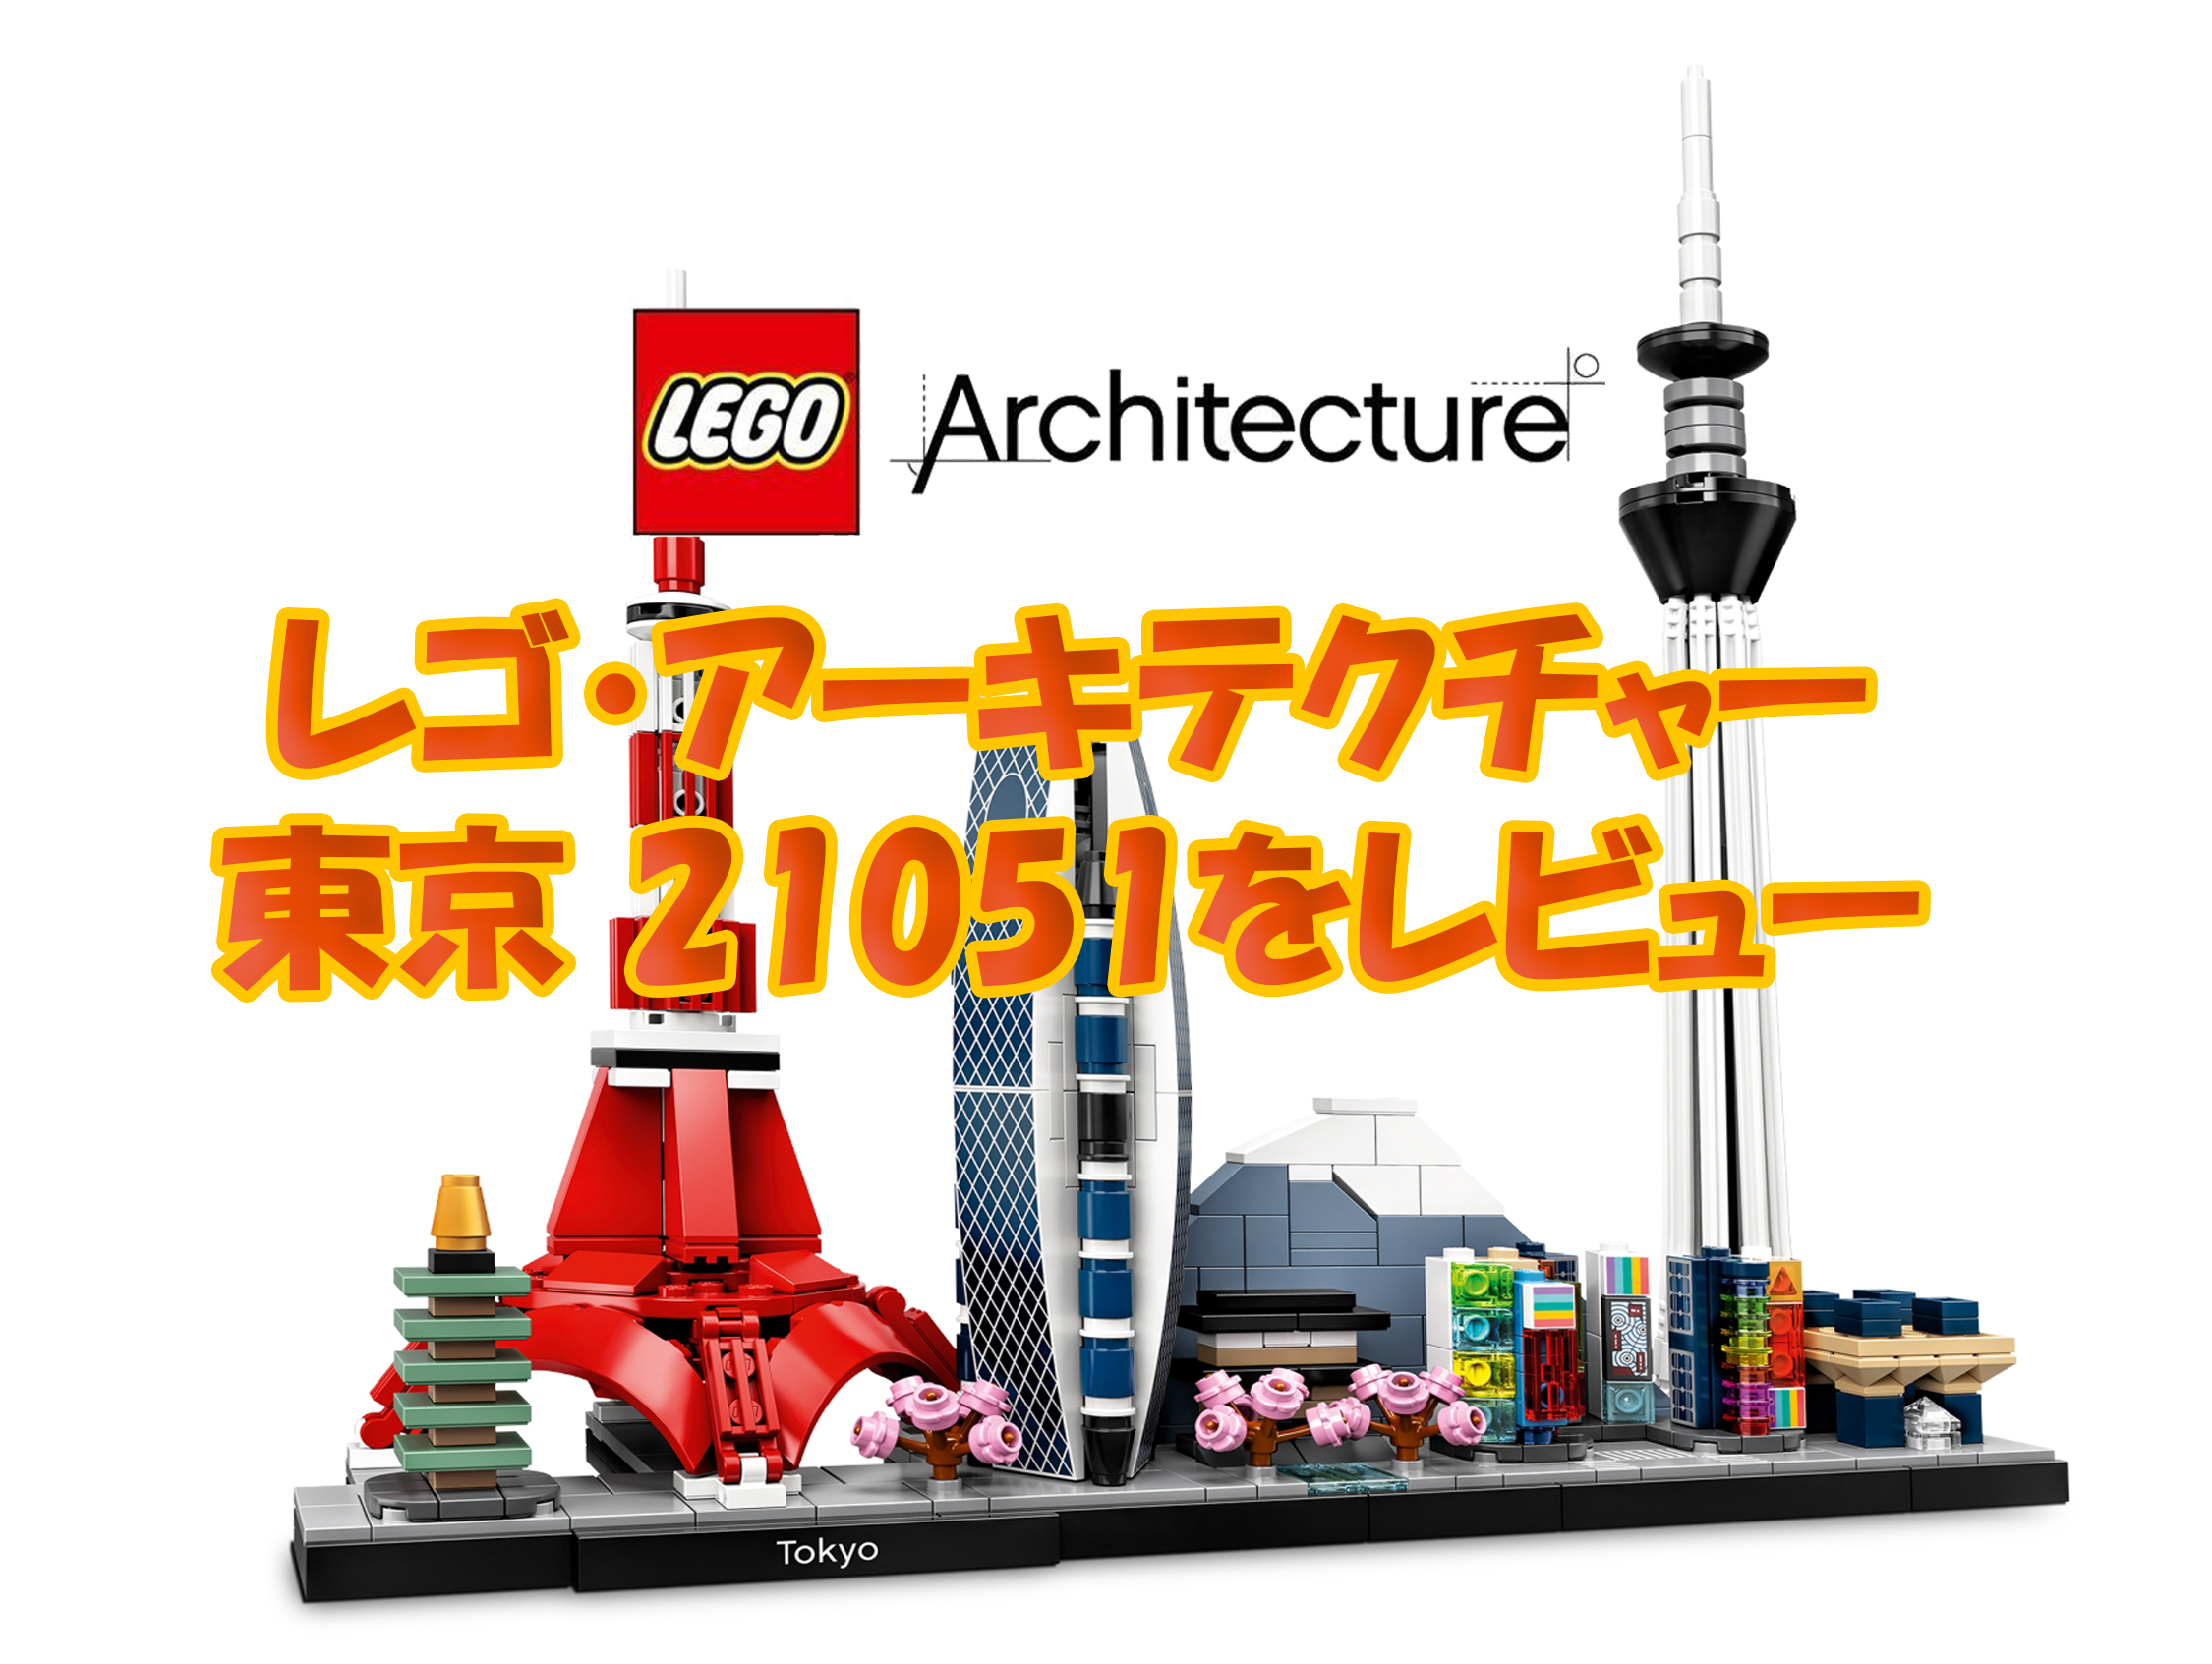 【レゴ (LEGO) アーキテクチャー】東京 21051を建築の視点でレビュー | Legoanywhere -かわいいレゴと綺麗な風景写真-